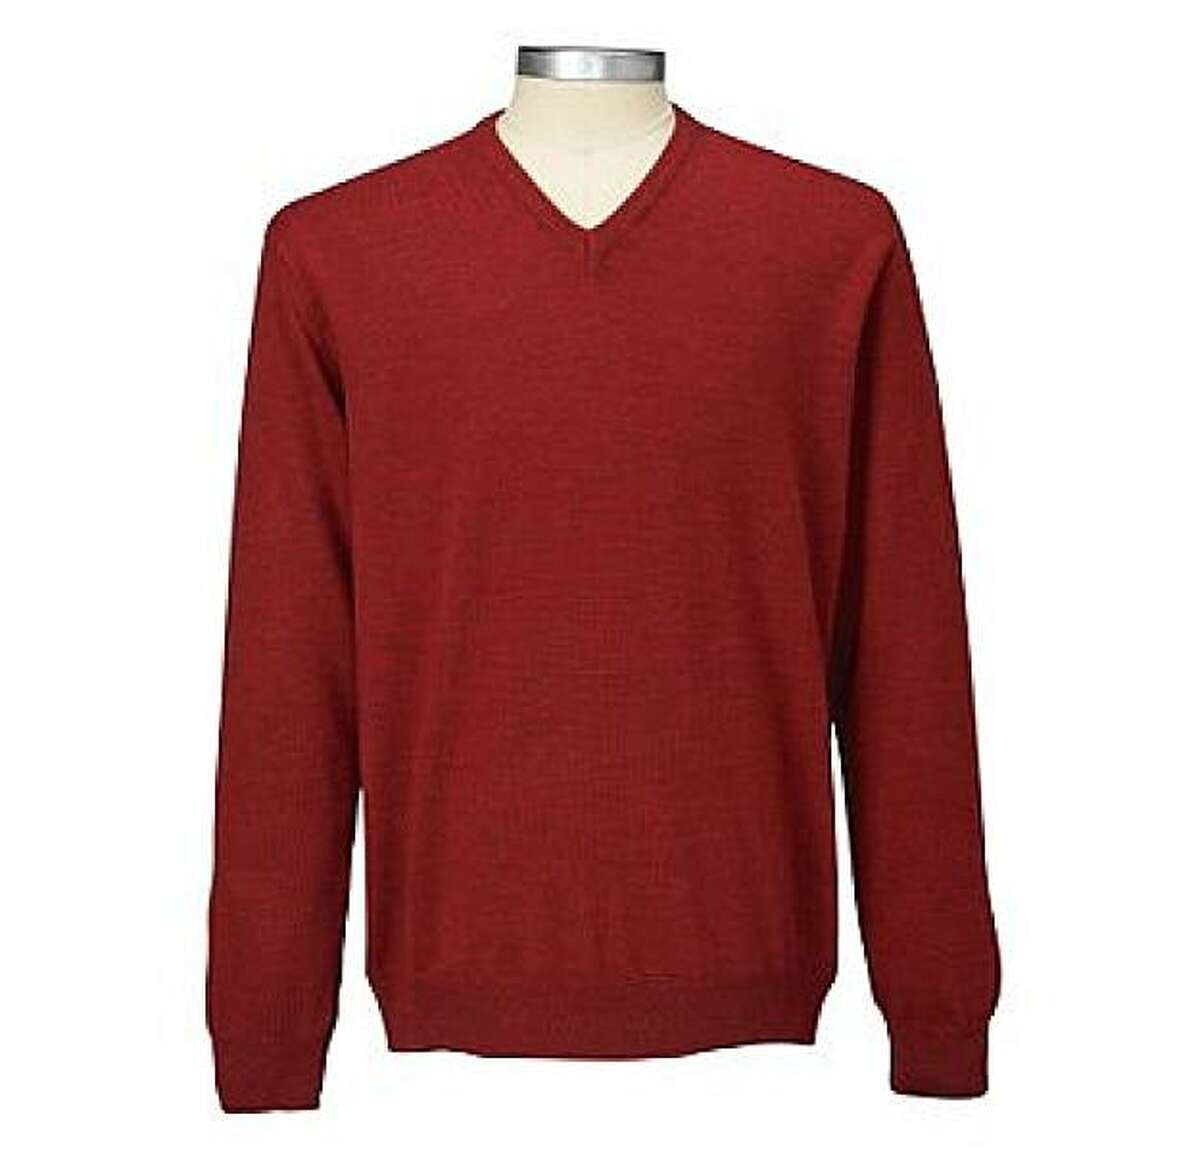 Men's Merino Wool V-Neck Sweater